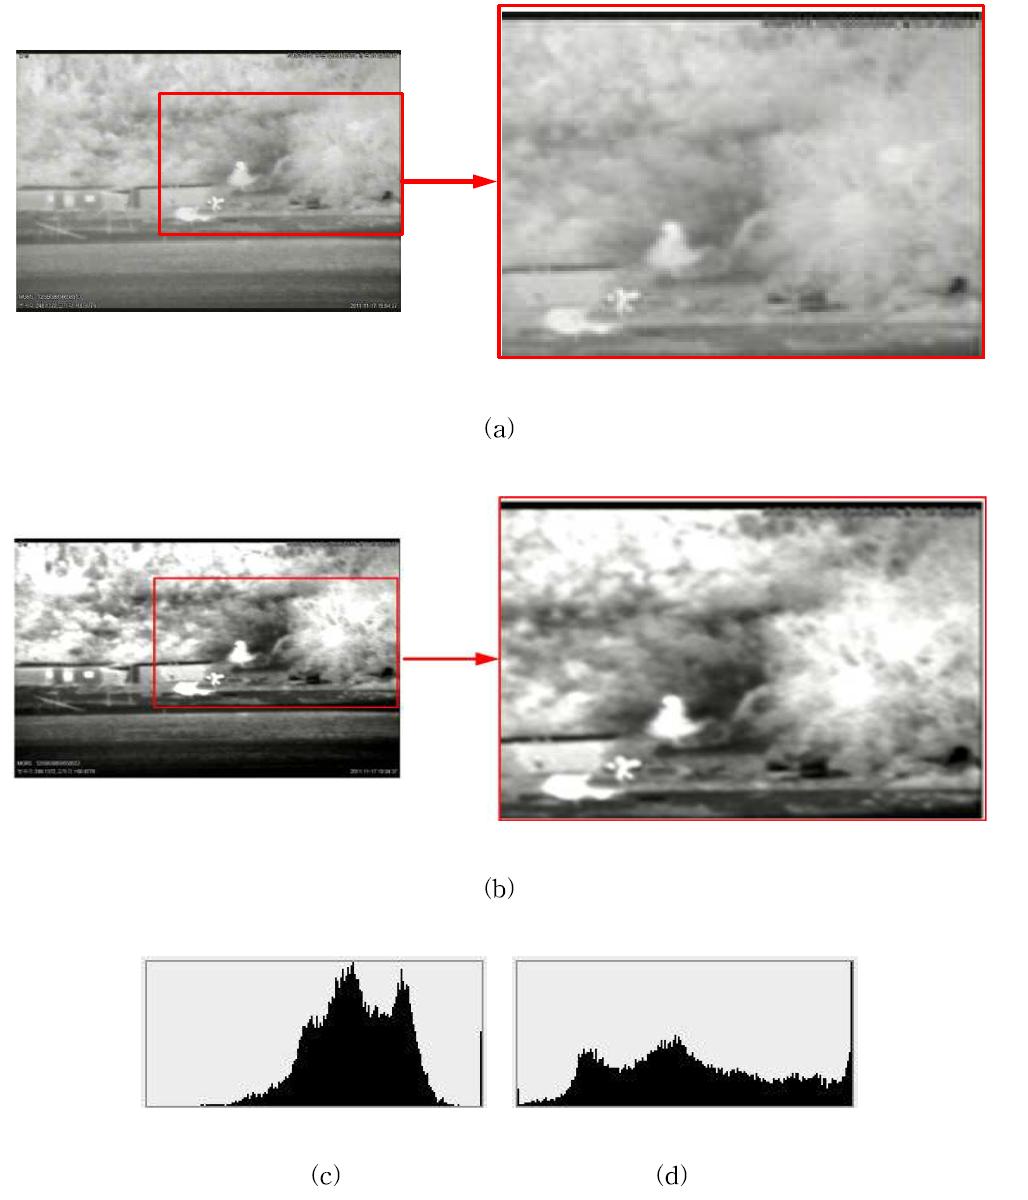 열영상 Camera Result (a) Original Image, (b) Result Image, (c) Original Image의 빨간 네모 부분의 Histogram, (d) Result Image의 빨간 네모 부분의 Histogram